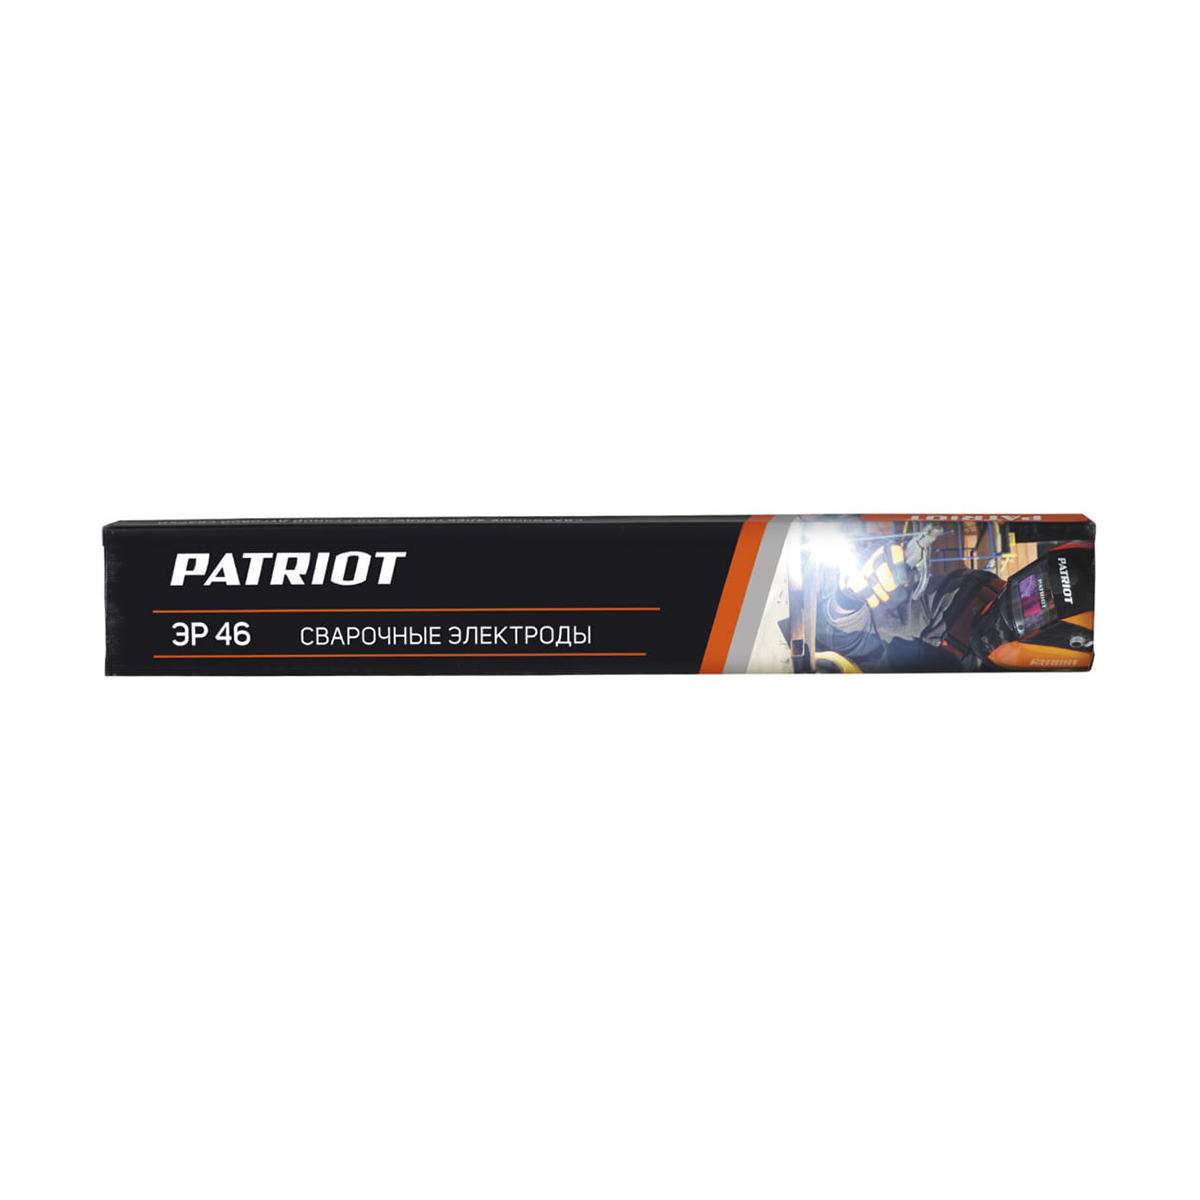 Электроды сварочные Patriot ЭР 46, 3 мм, 1 кг электроды patriot эр 46 4 0mm 1kg 605012026